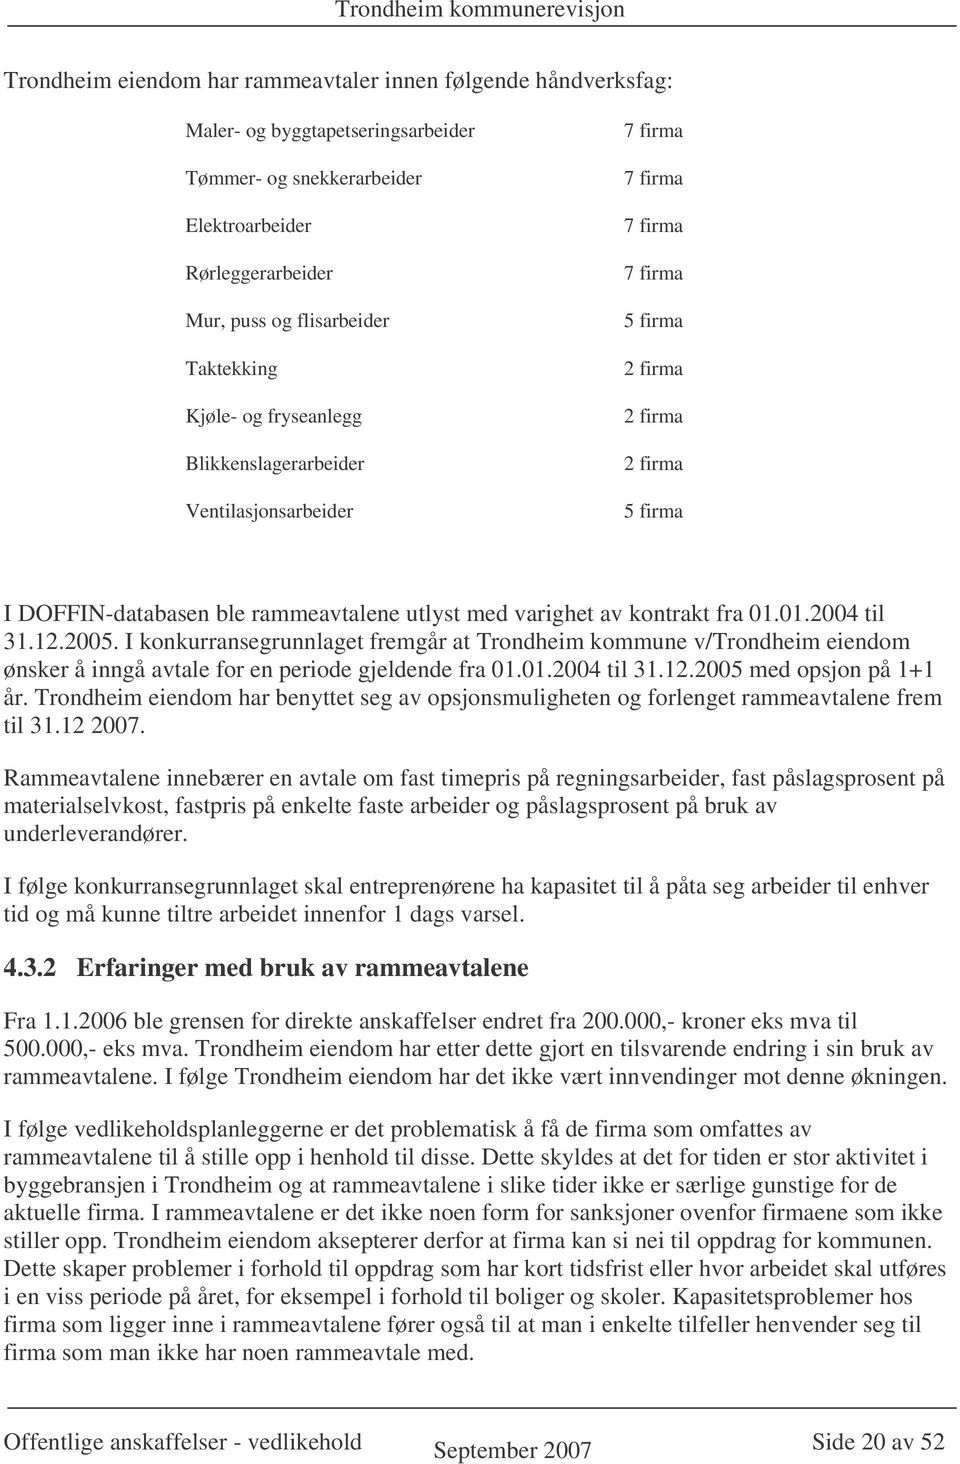 kontrakt fra 01.01.2004 til 31.12.2005. I konkurransegrunnlaget fremgår at Trondheim kommune v/trondheim eiendom ønsker å inngå avtale for en periode gjeldende fra 01.01.2004 til 31.12.2005 med opsjon på 1+1 år.